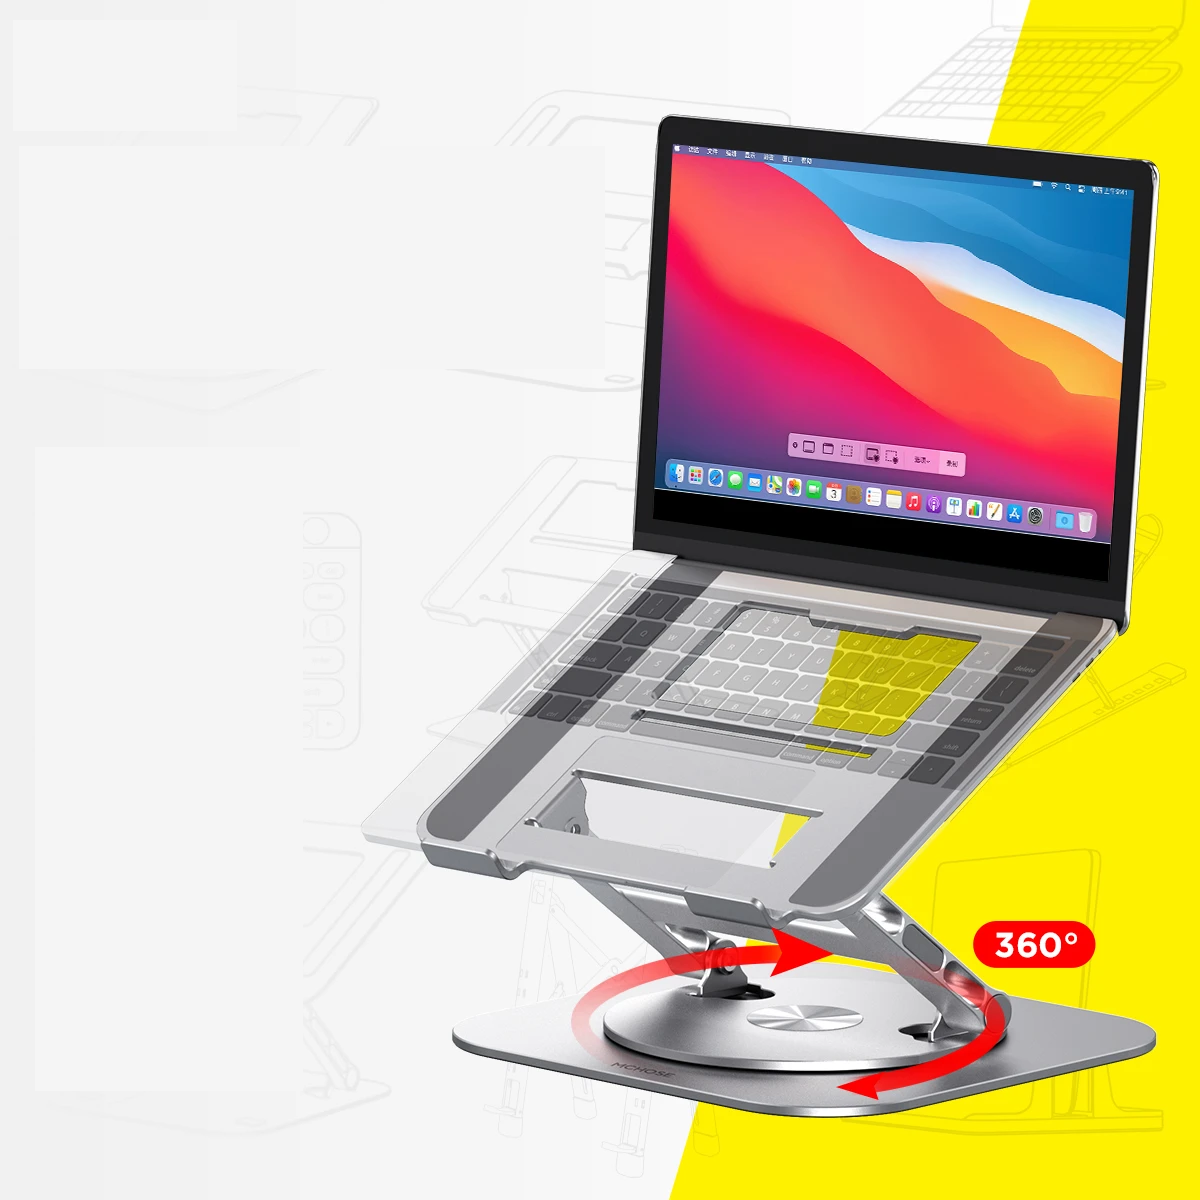 Aluminum Laptop Stand: Ergonomic and Stylish